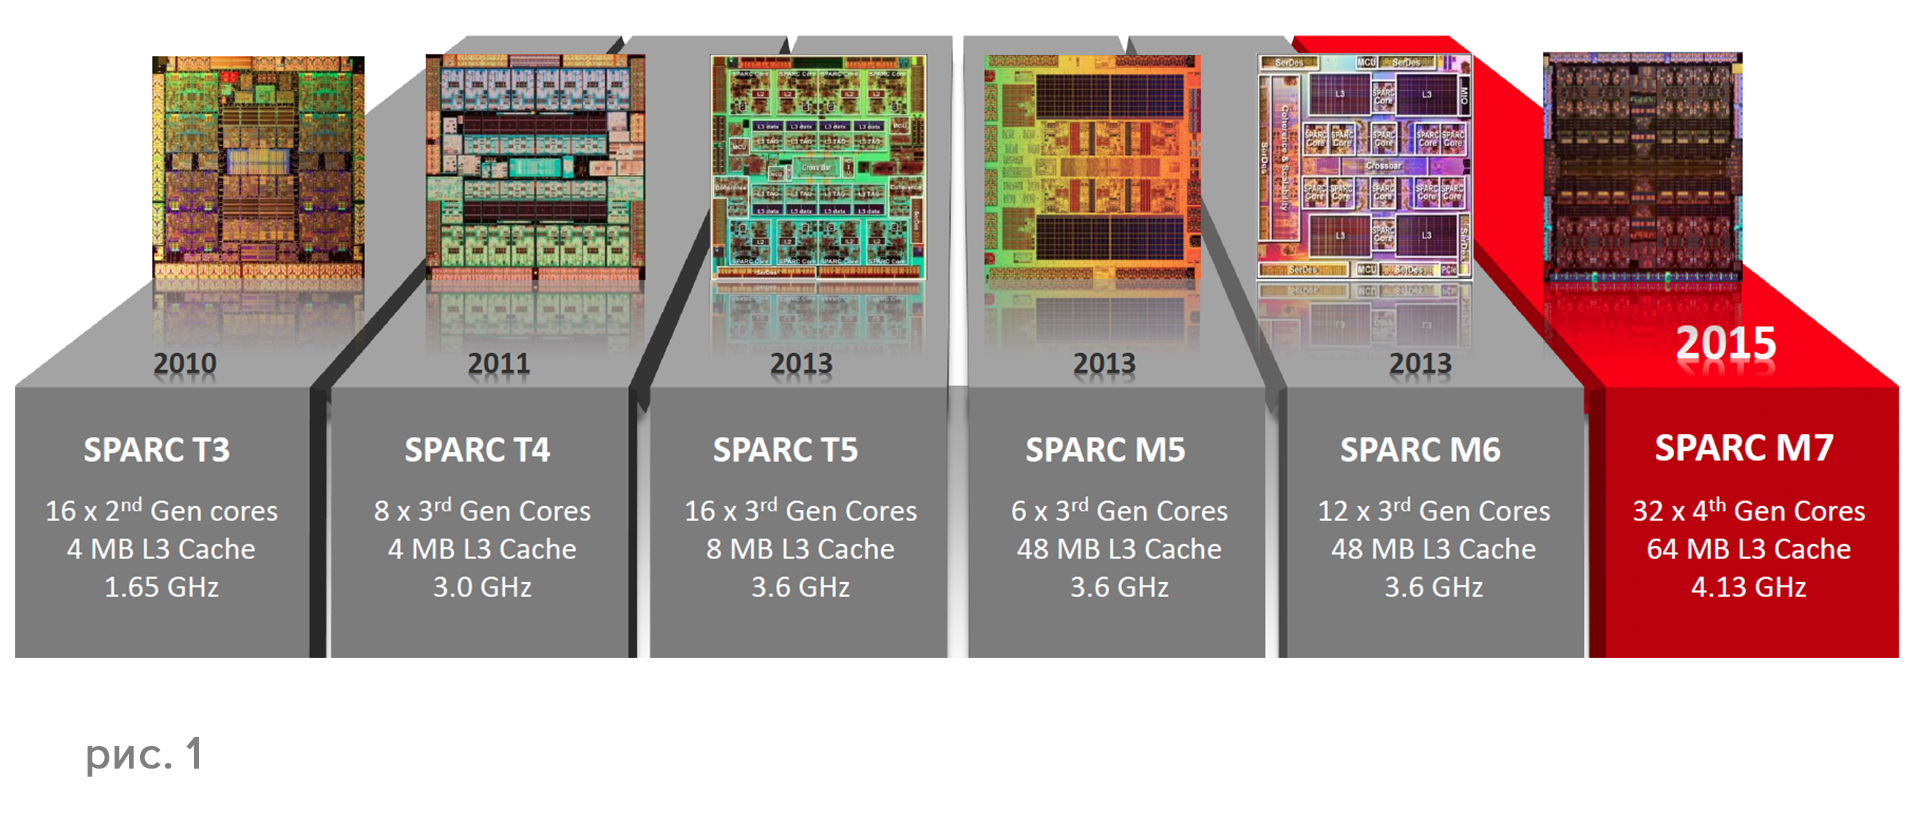 Серверы Oracle SPARC T7 и M7 — новая платформа для защищенных вычислений - 1